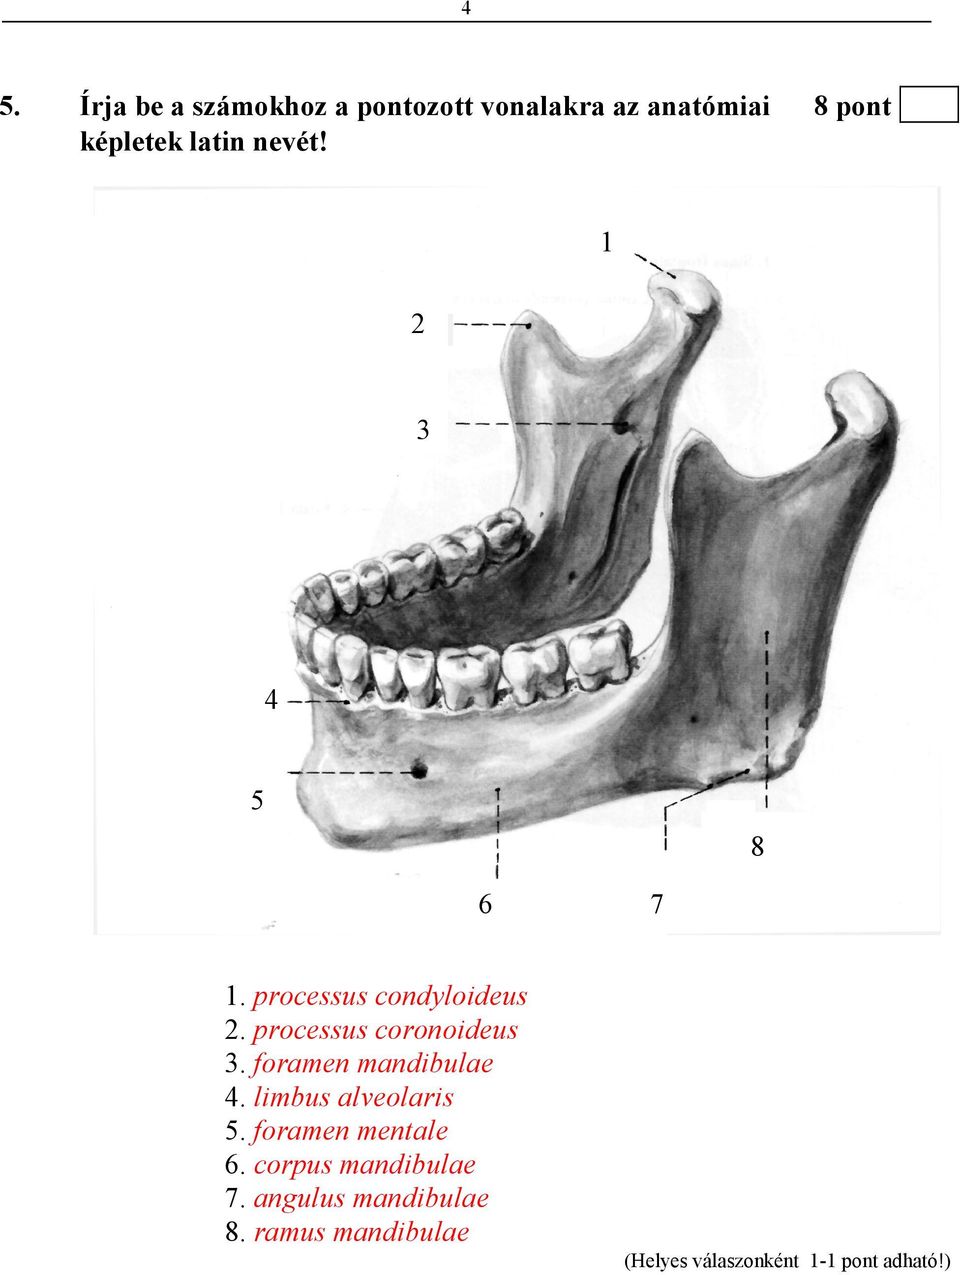 processus coronoideus 3. foramen mandibulae 4. limbus alveolaris 5.